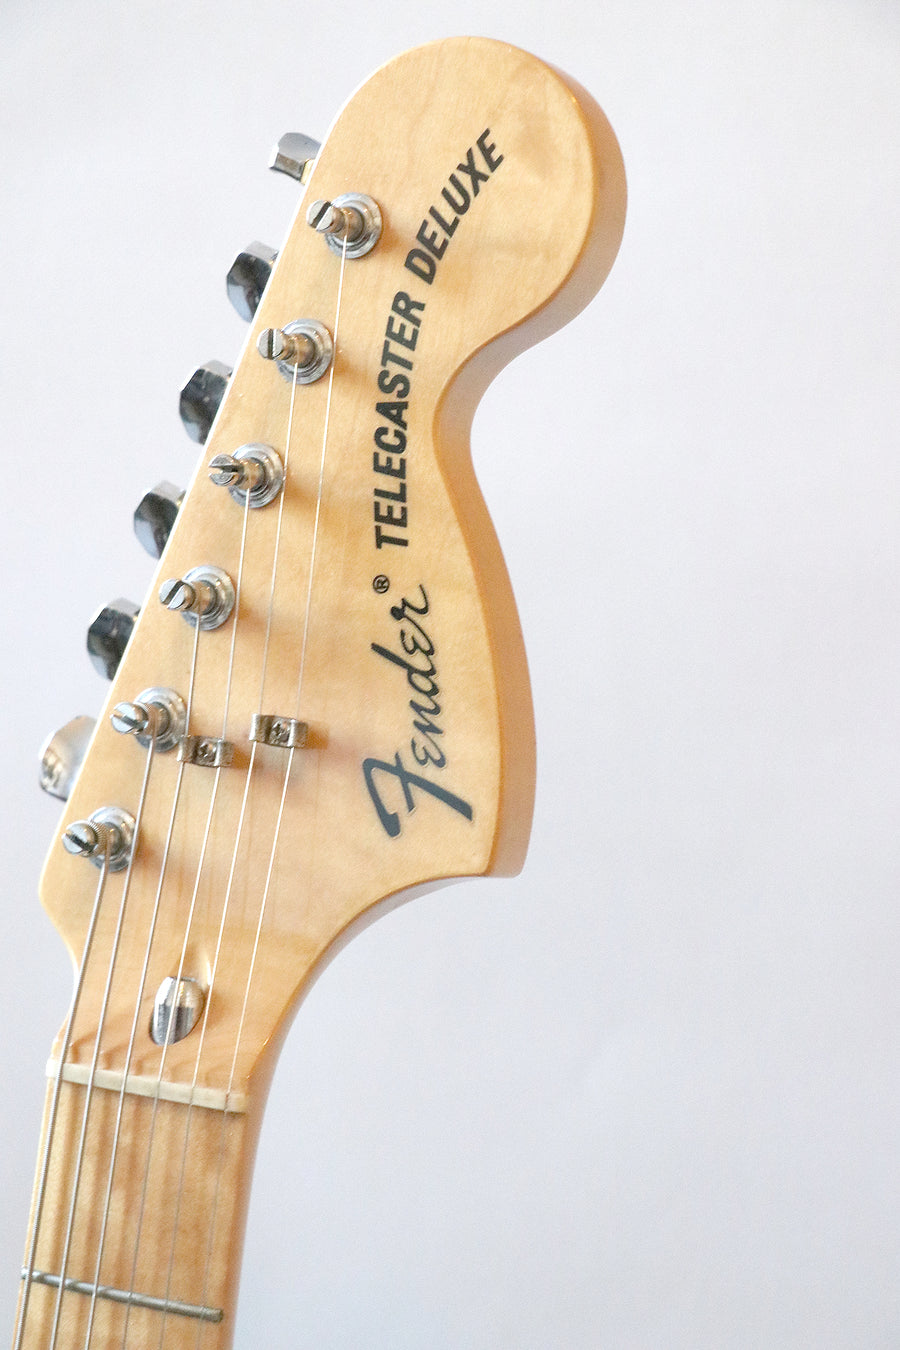 Fender Telecaster Deluxe - Fender Japan